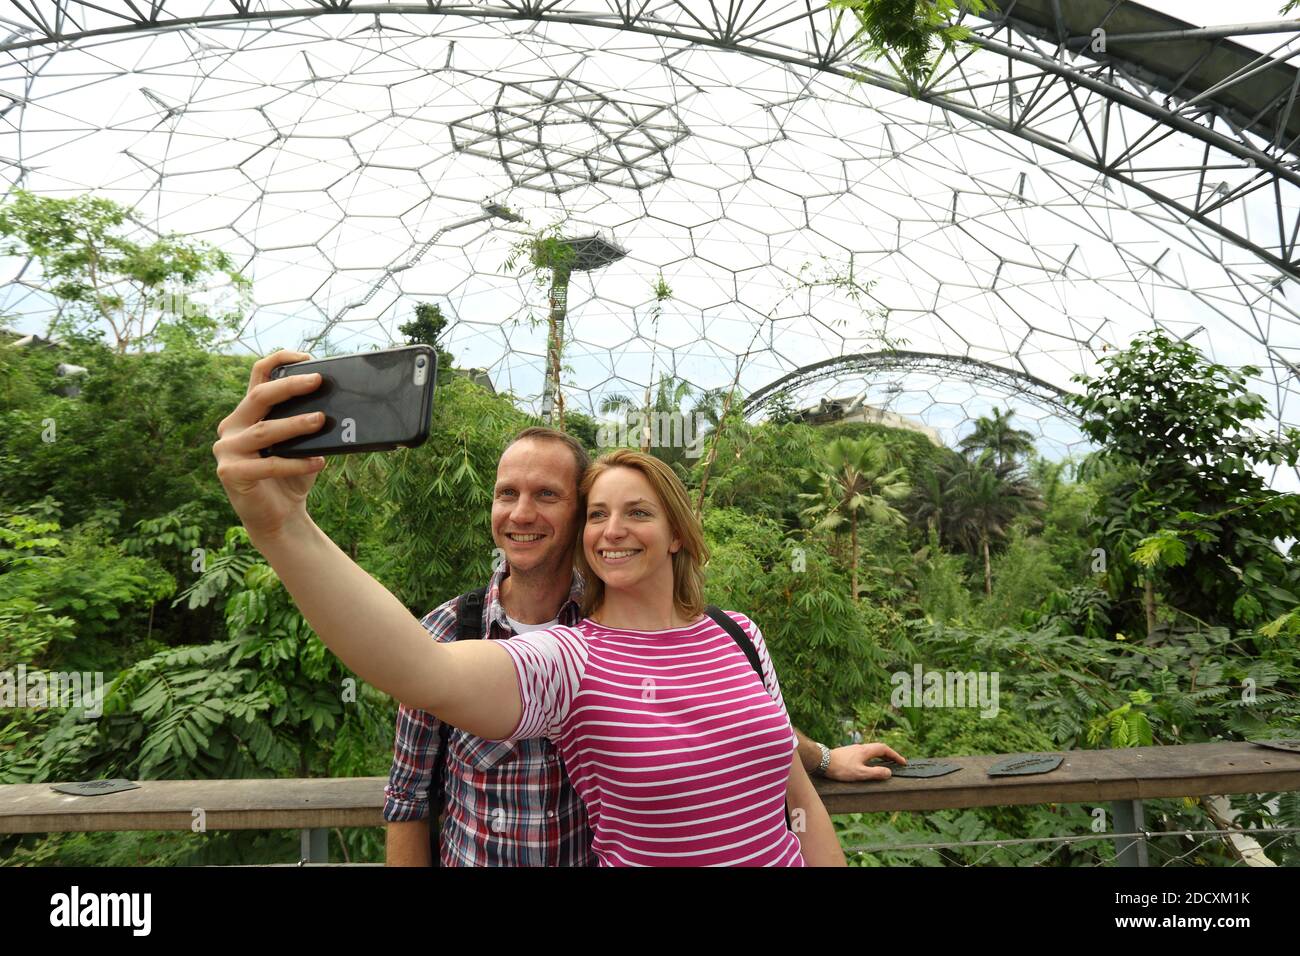 GRAN BRETAGNA / Cornovaglia / giovani turisti che prendono selfie al progetto Eden Foto Stock